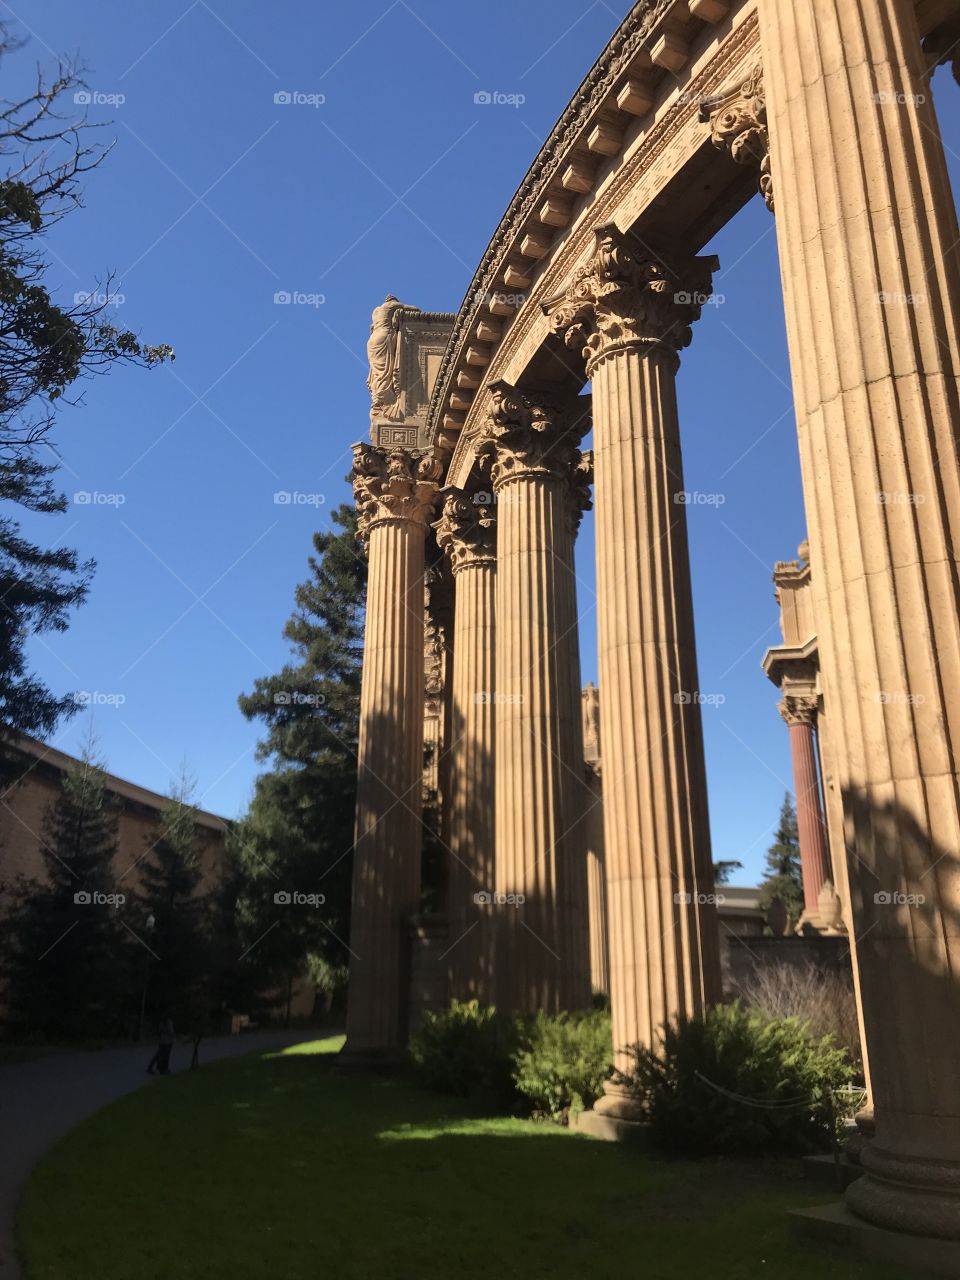 Columns in San Francisco california